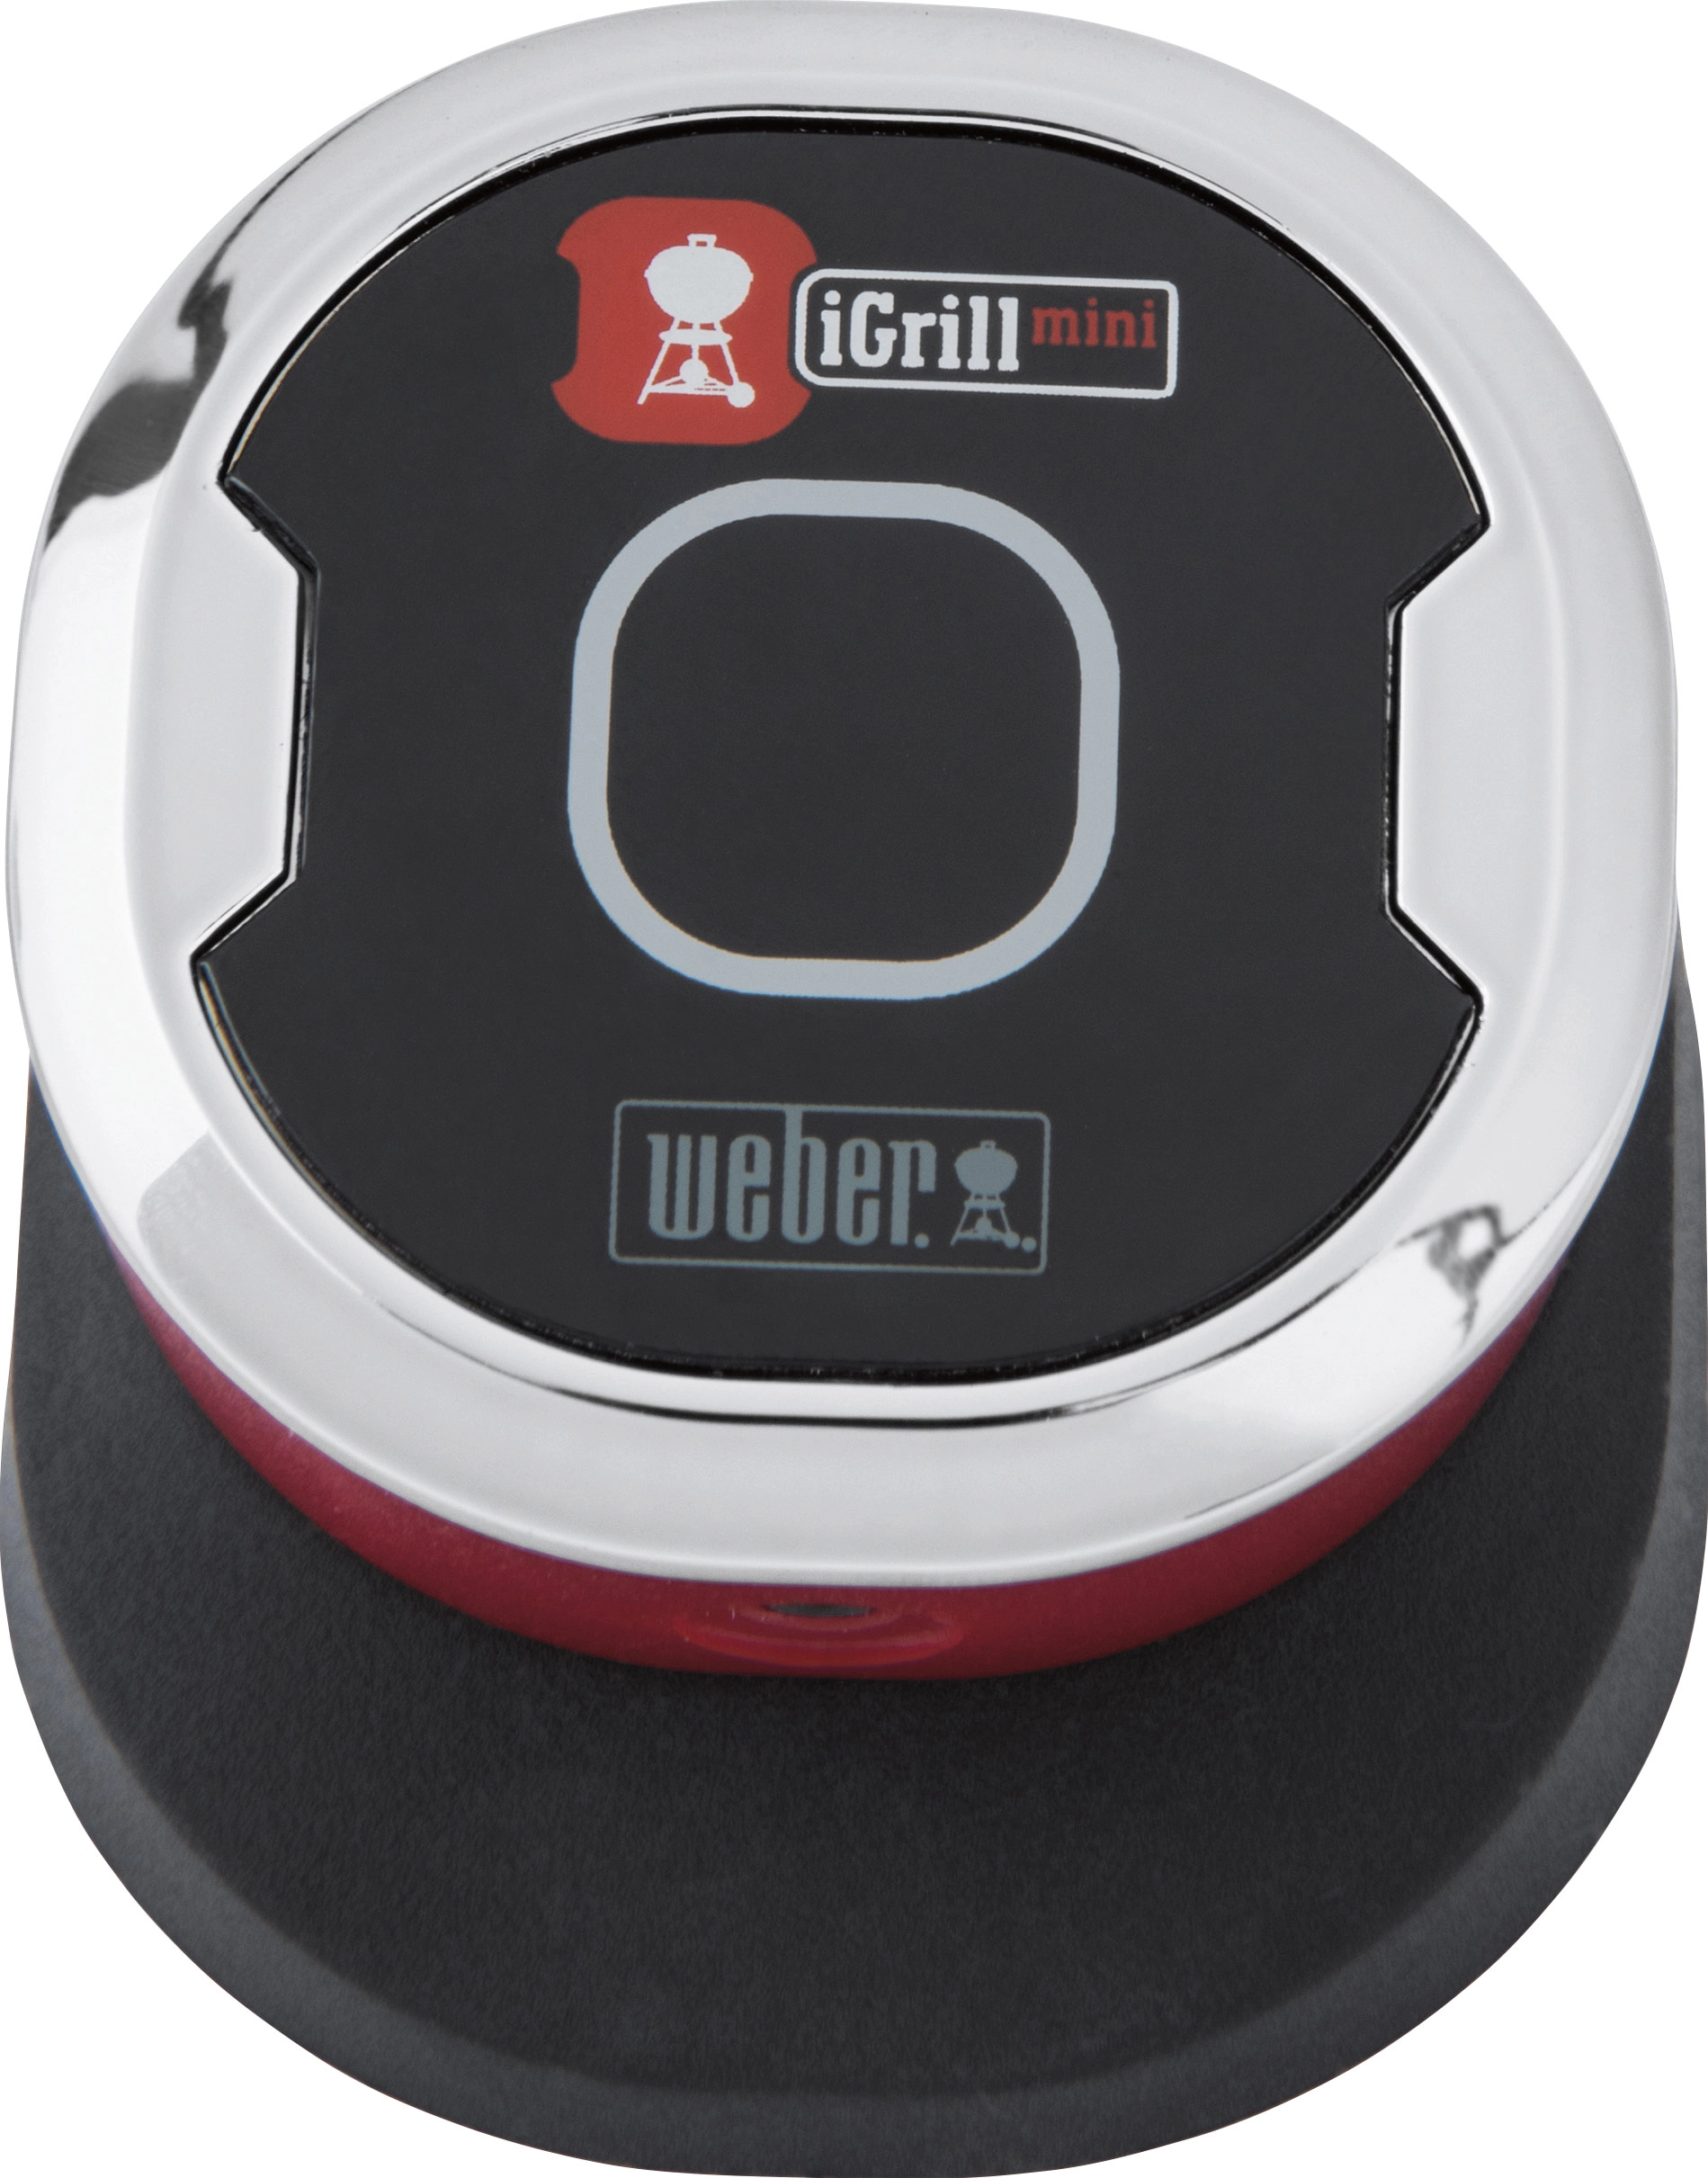 Weber Bluetooth-Thermometer und Timer kaufen bei mit Messfühler einem Mini OBI iGrill